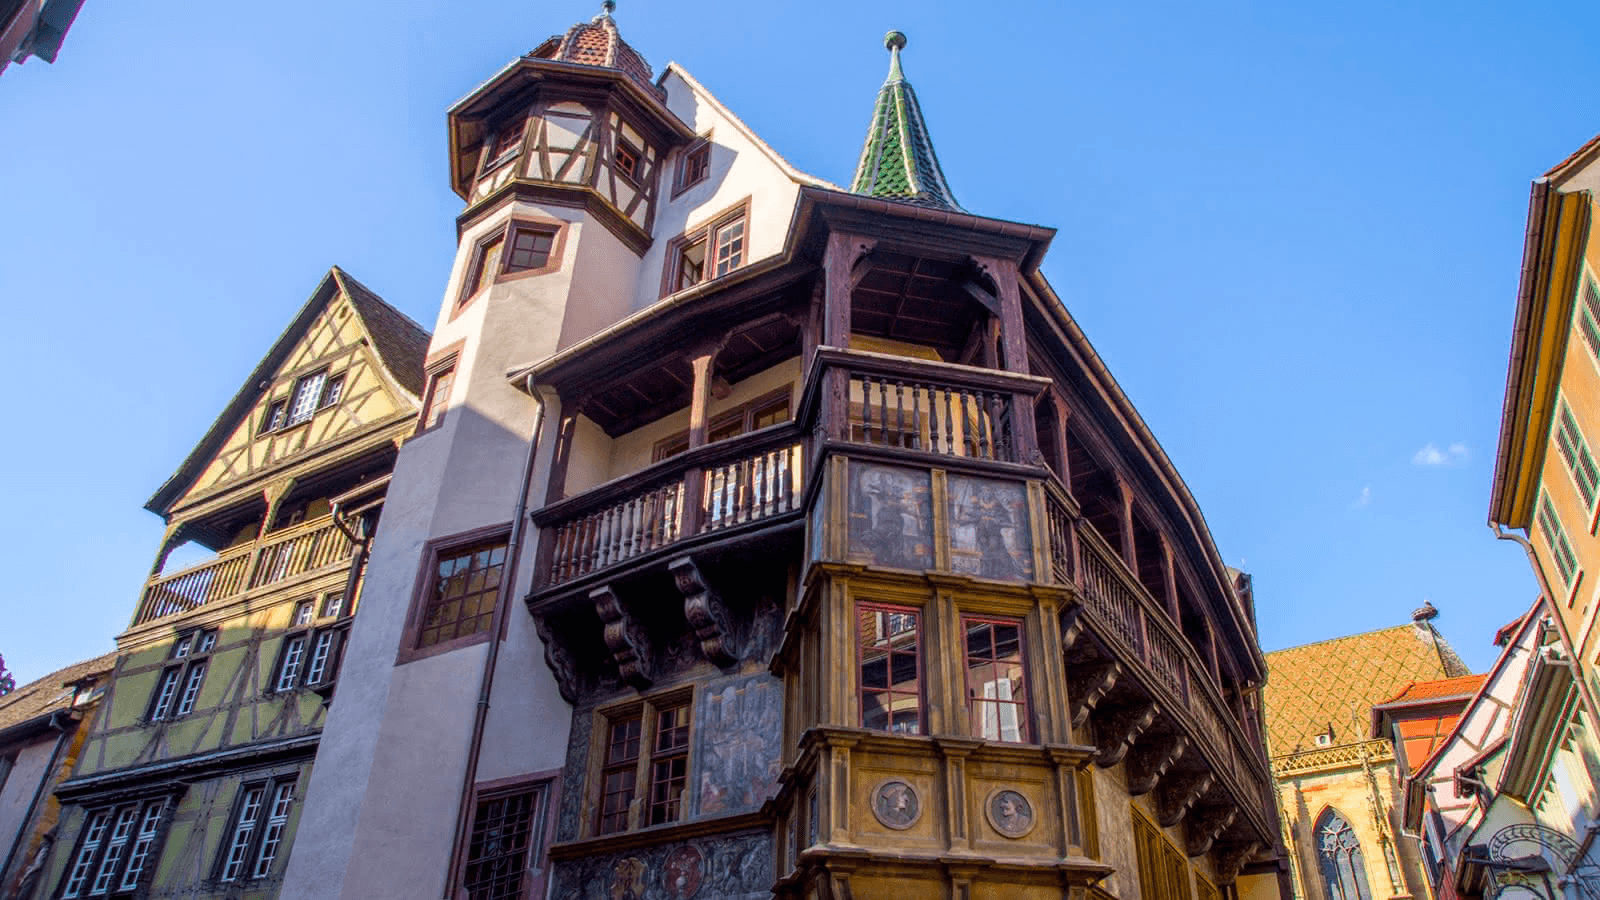 Source: Visit Alsace